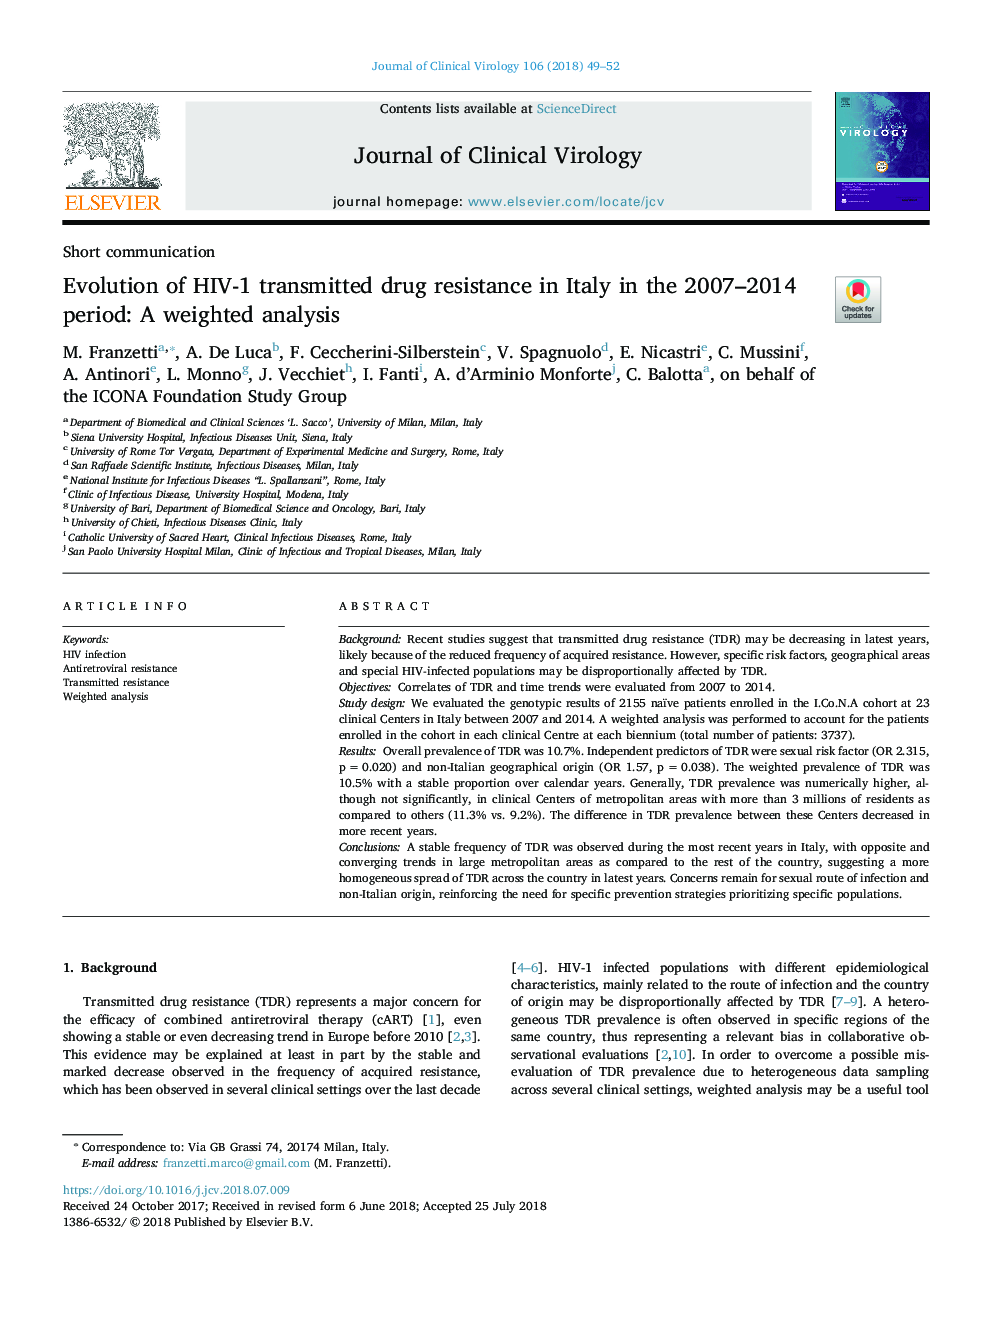 تکامل مقاومت داروی انتقال اچ آی وی در ایتالیا در دوره 2007-2014: یک تحلیل وزن 